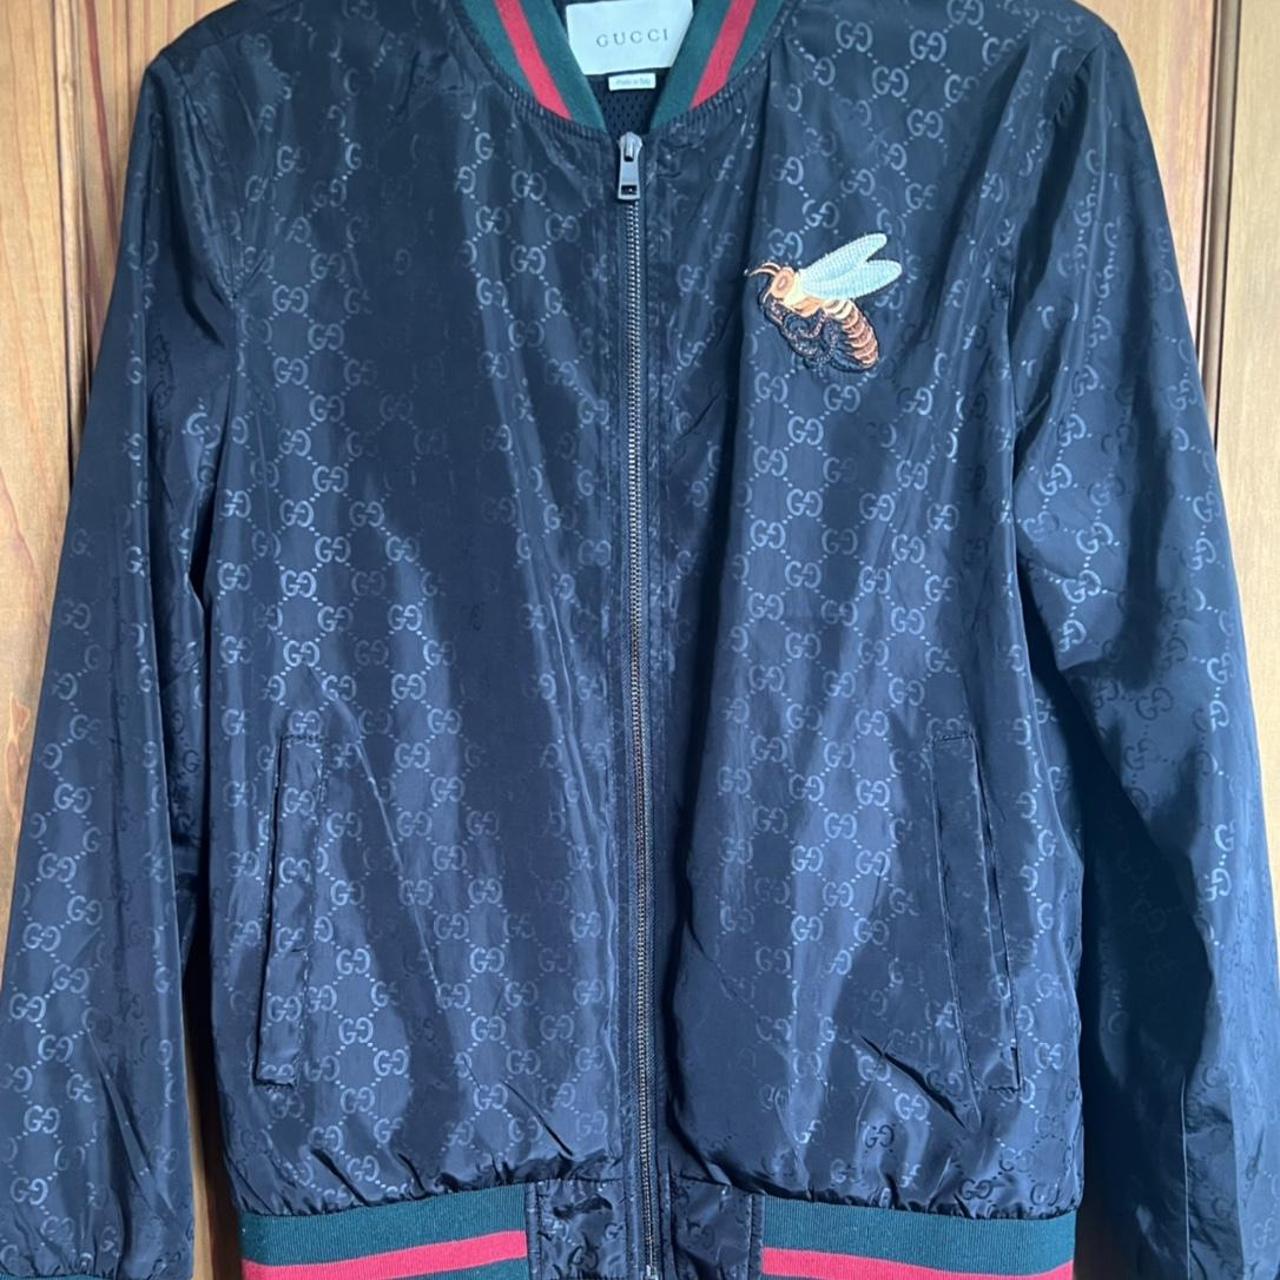 Gucci jacket Selling as I don’t wear it... - Depop